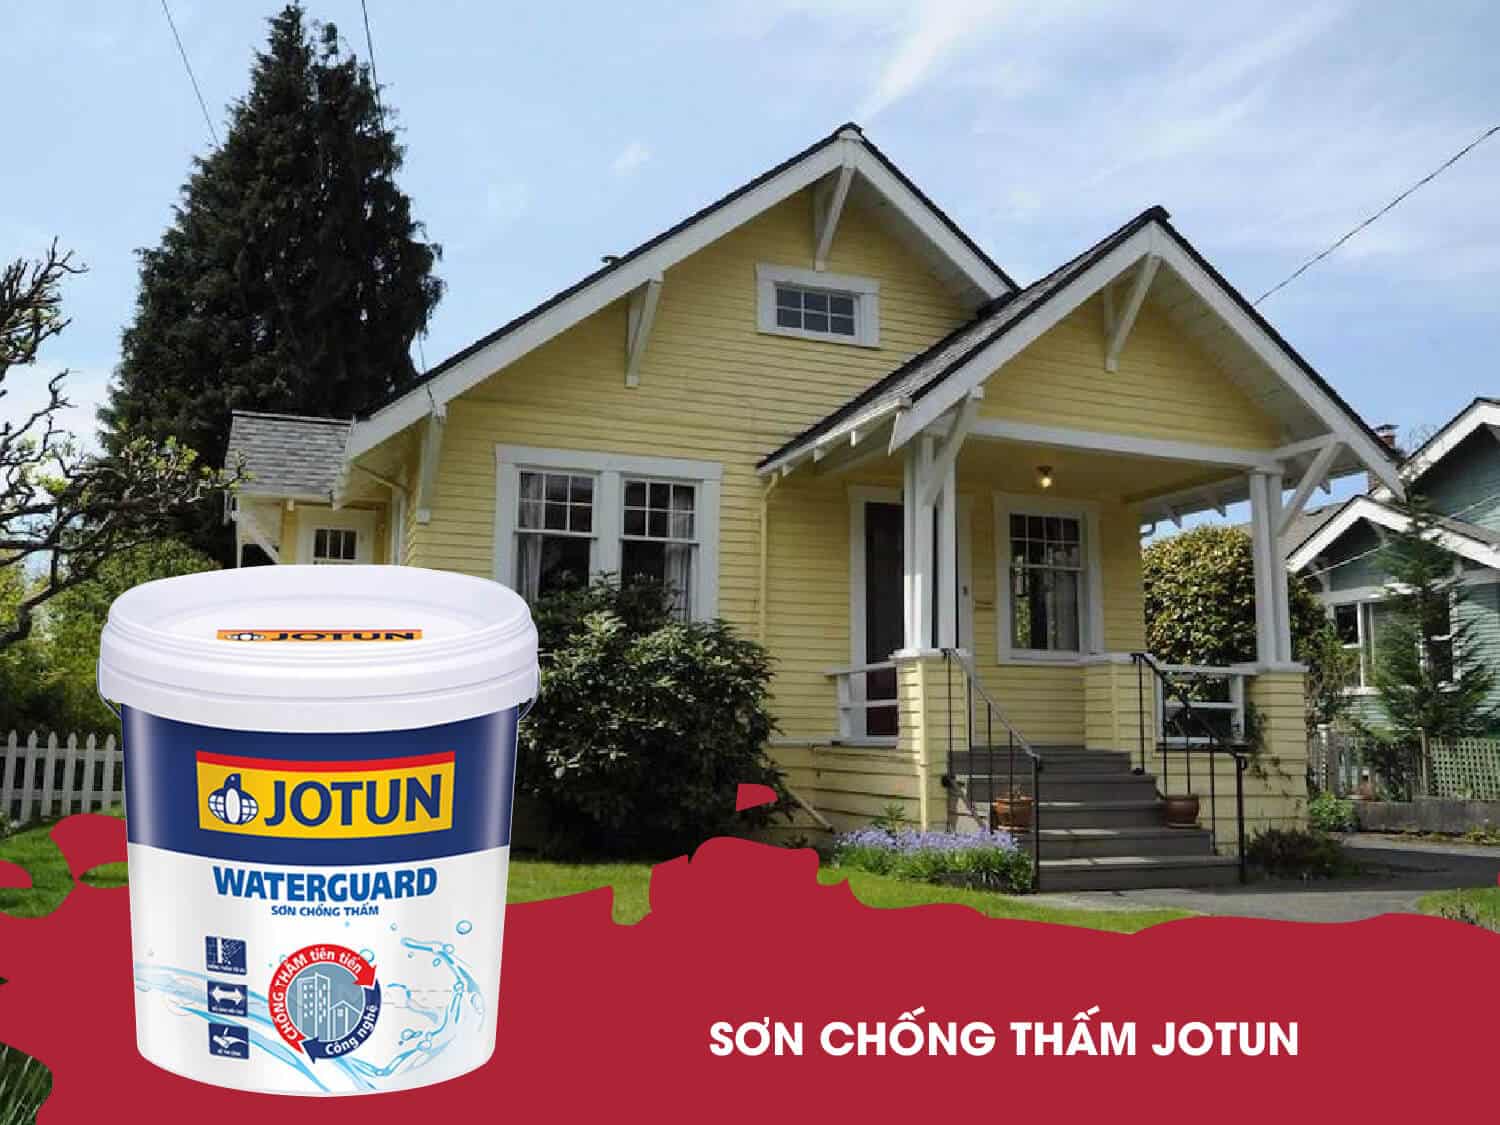 Sơn chống thấm Jotun - lựa chọn của người tiêu dùng Việt